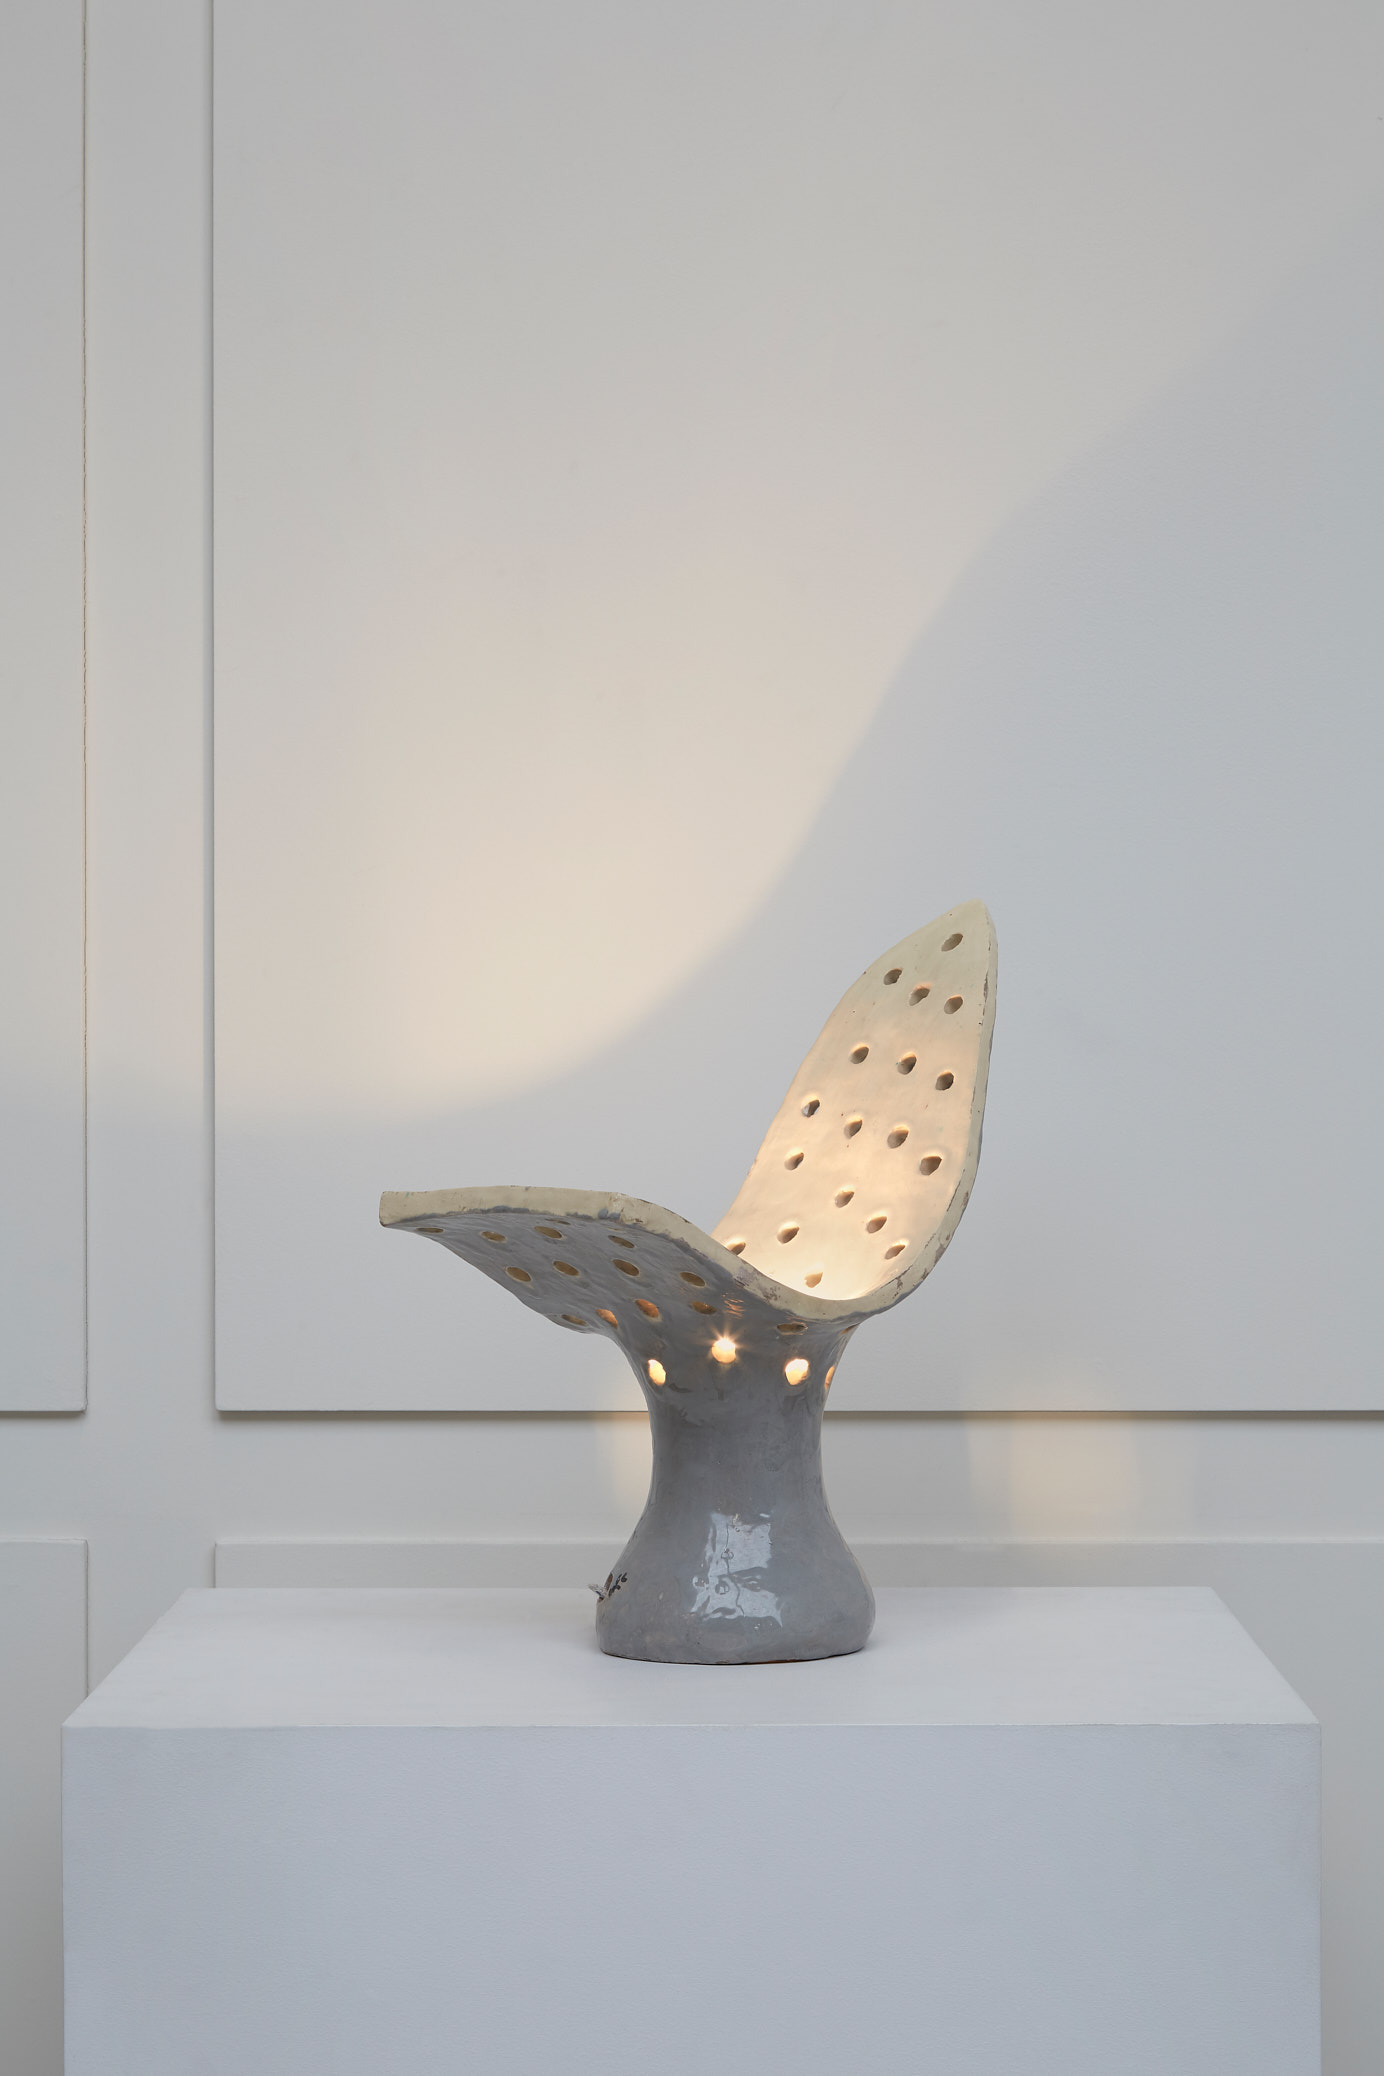 Guidette Carbonell, “Oiseau feuille“ lamp, vue 01